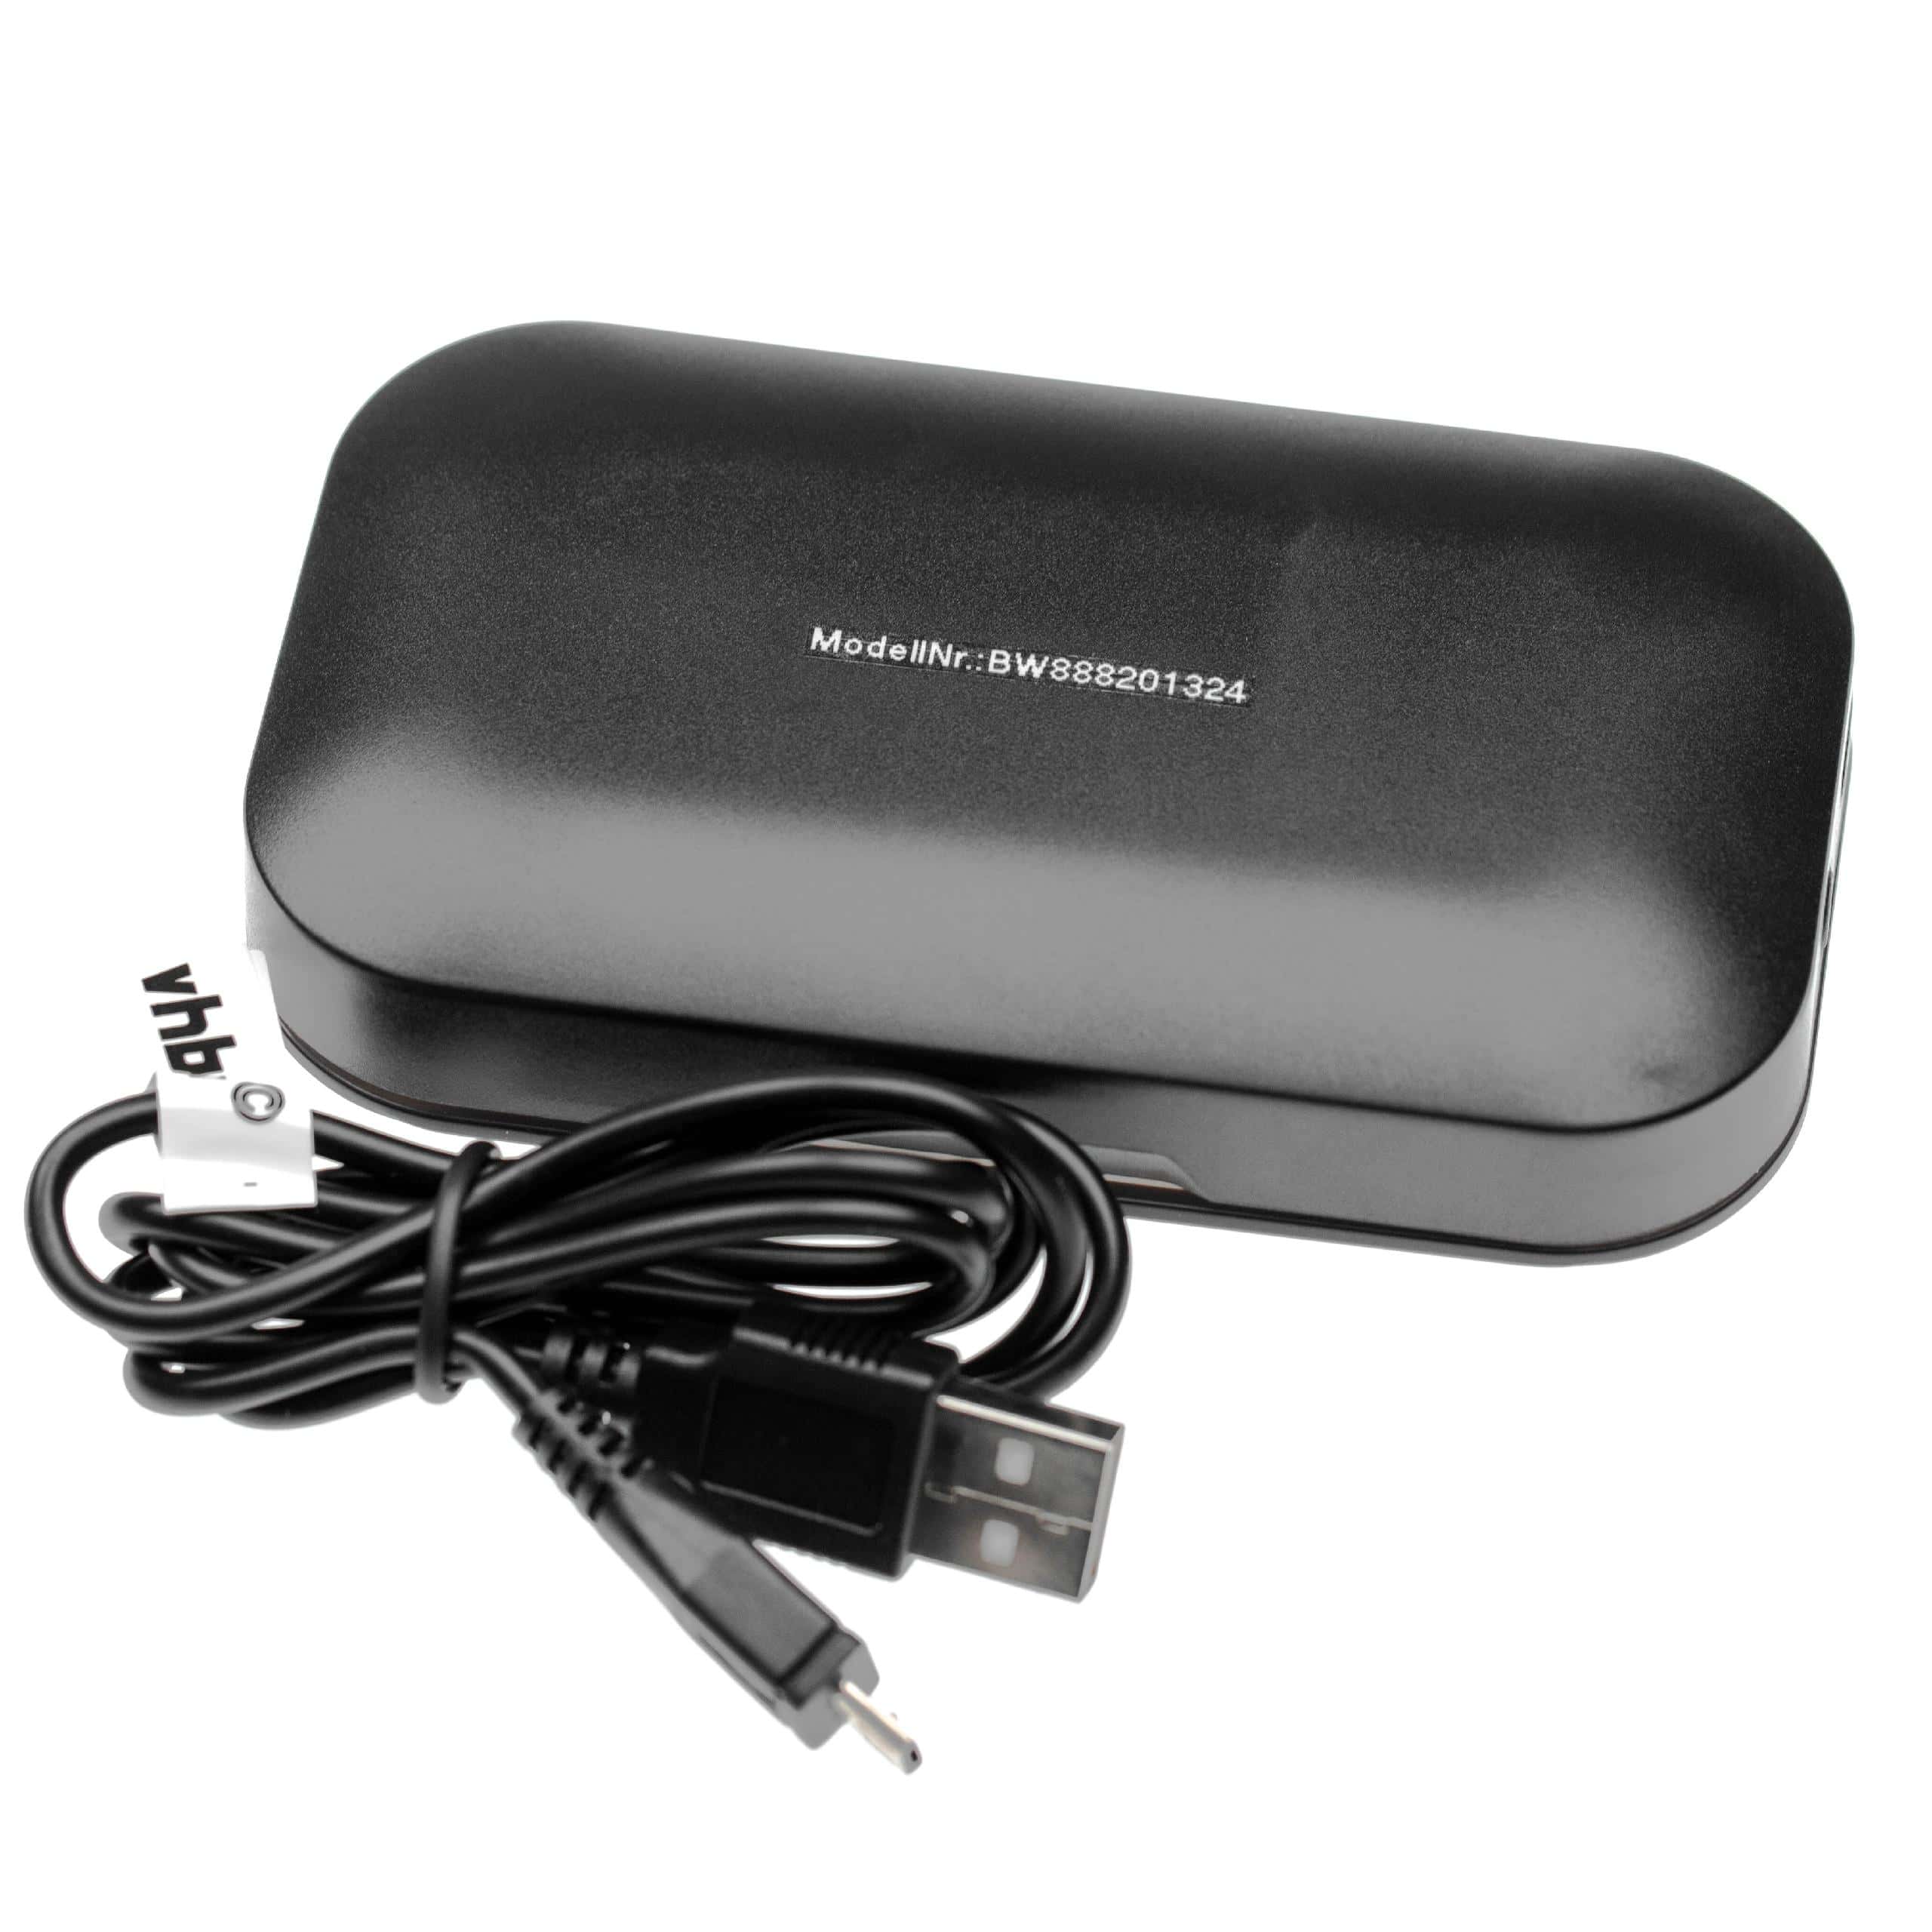 vhbw Ladebox passend für Plantronics Voyager Legend Headset - Inkl. USB-Ladekabel Schwarz